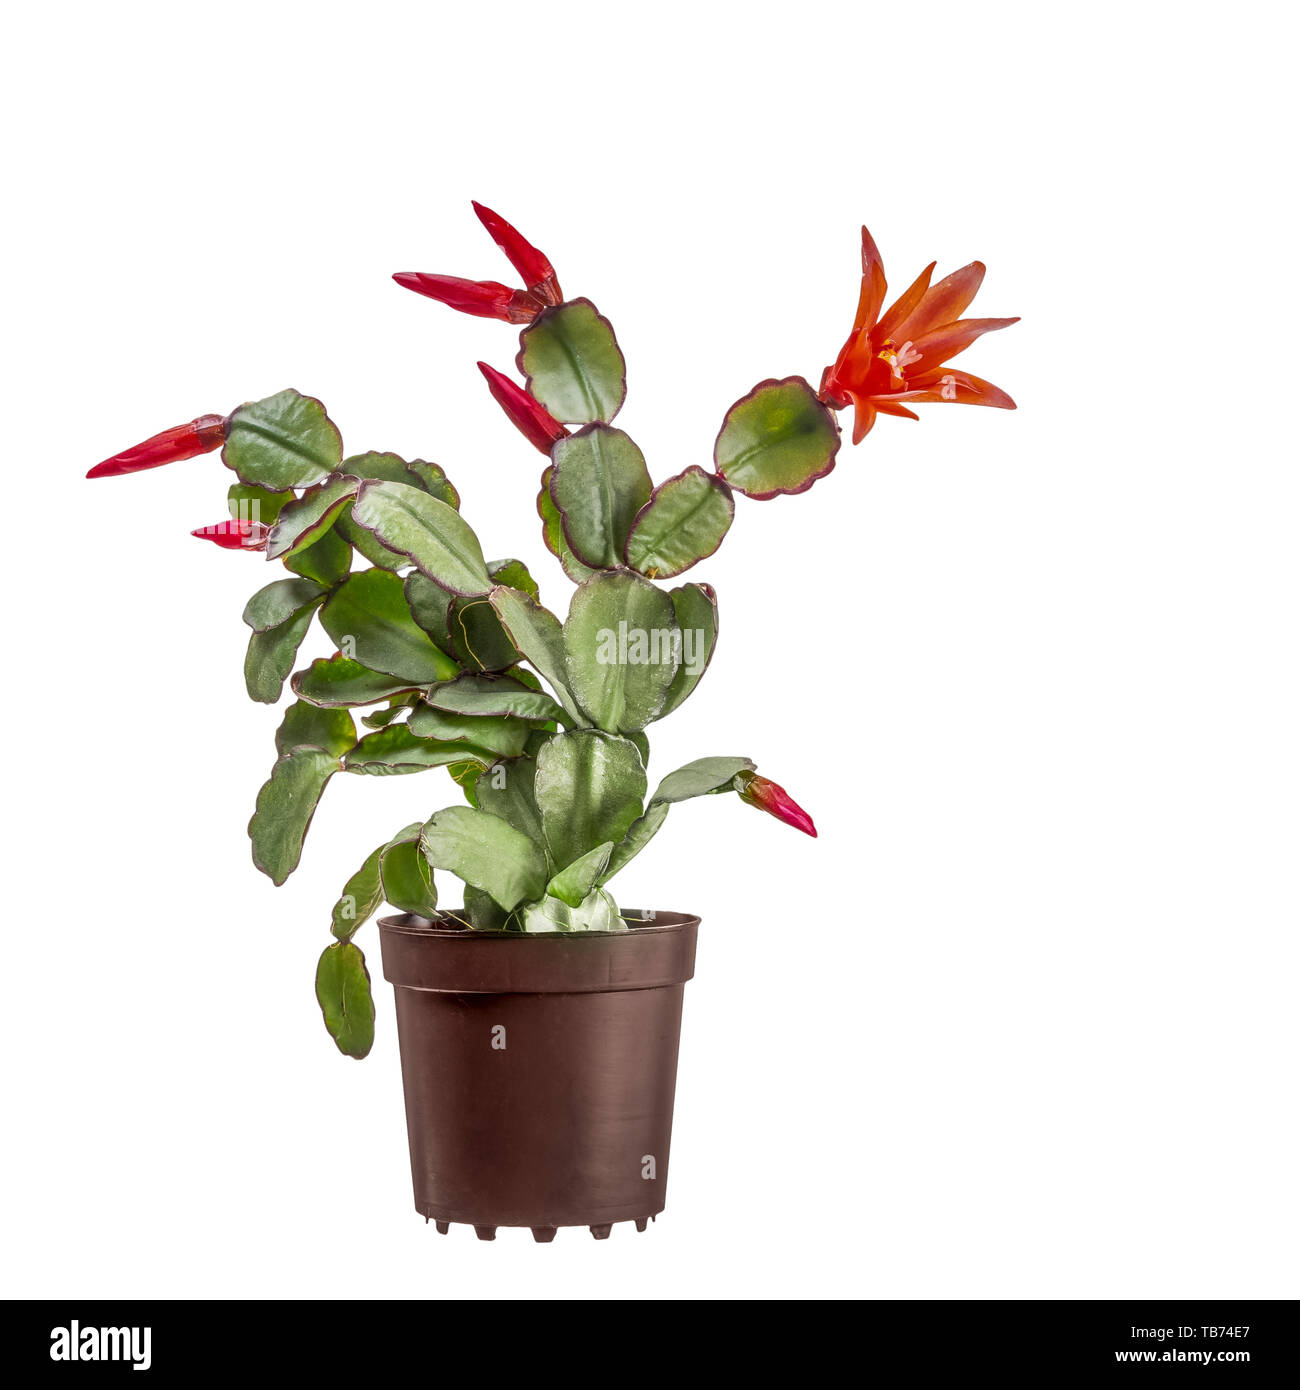 Les petites fleurs de cactus de Pâques, Rhipsalidopsis, gaertnerrii avec les fleurs rouges et les bourgeons. En pot en plastique brun isolé sur fond blanc. Banque D'Images